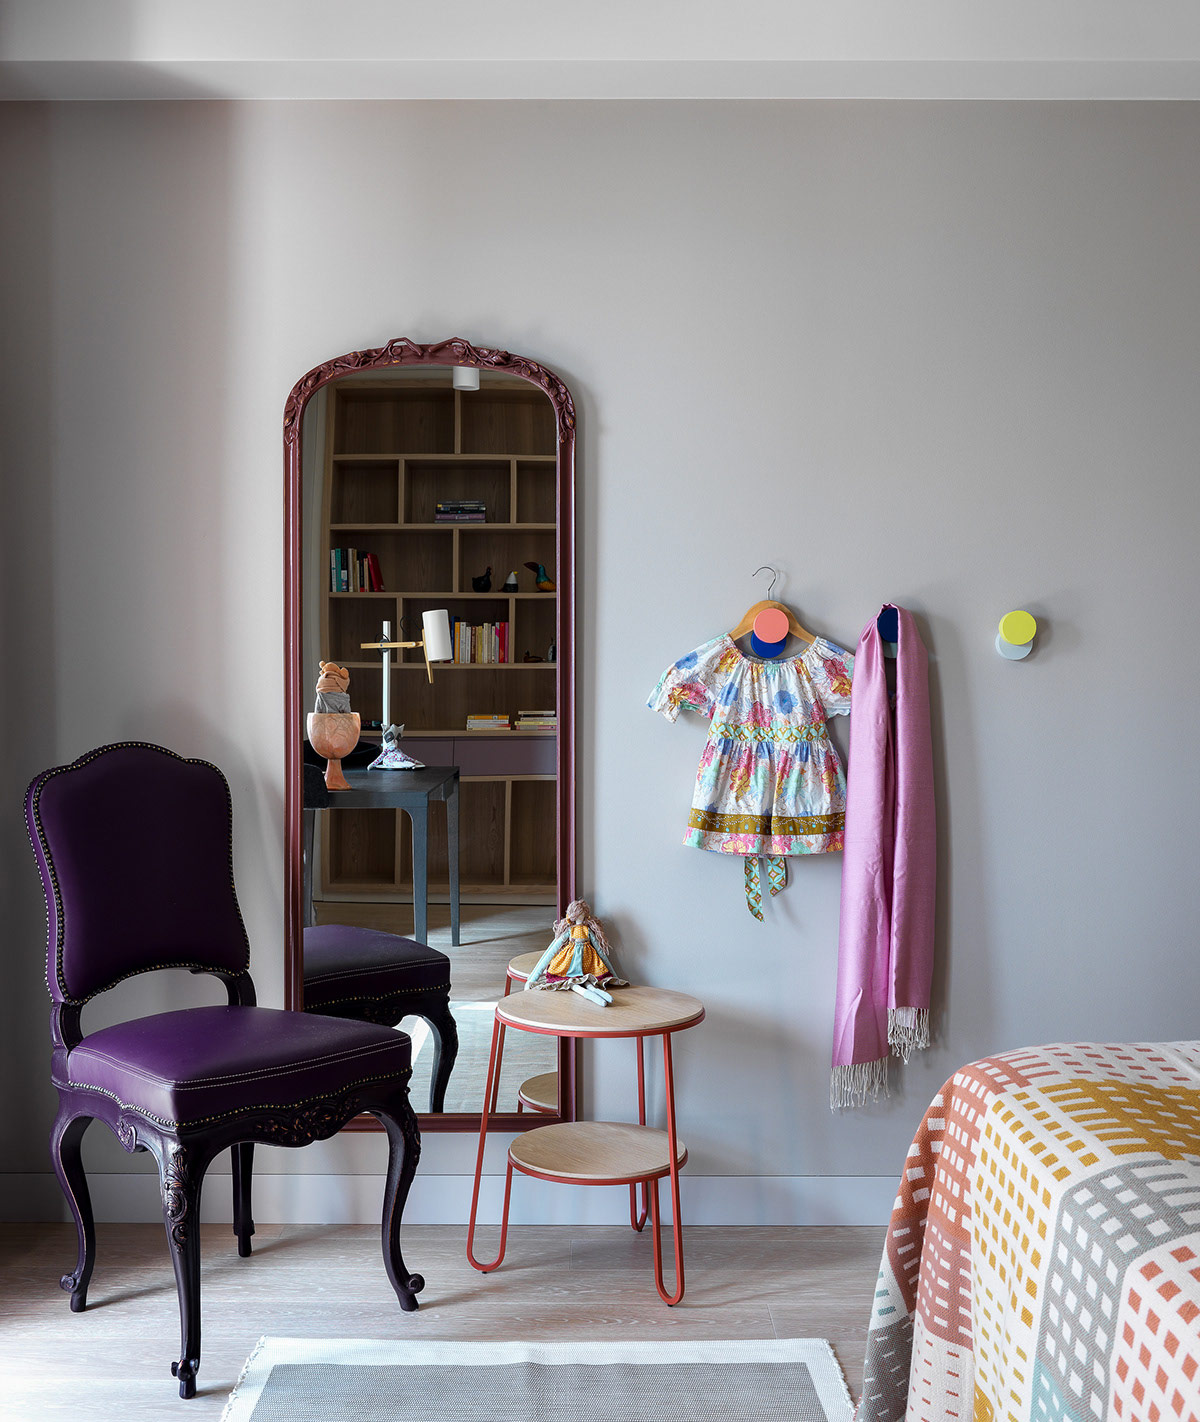 鲜艳的色调 清新的自然风格:巴塞罗那彩虹色家居设计